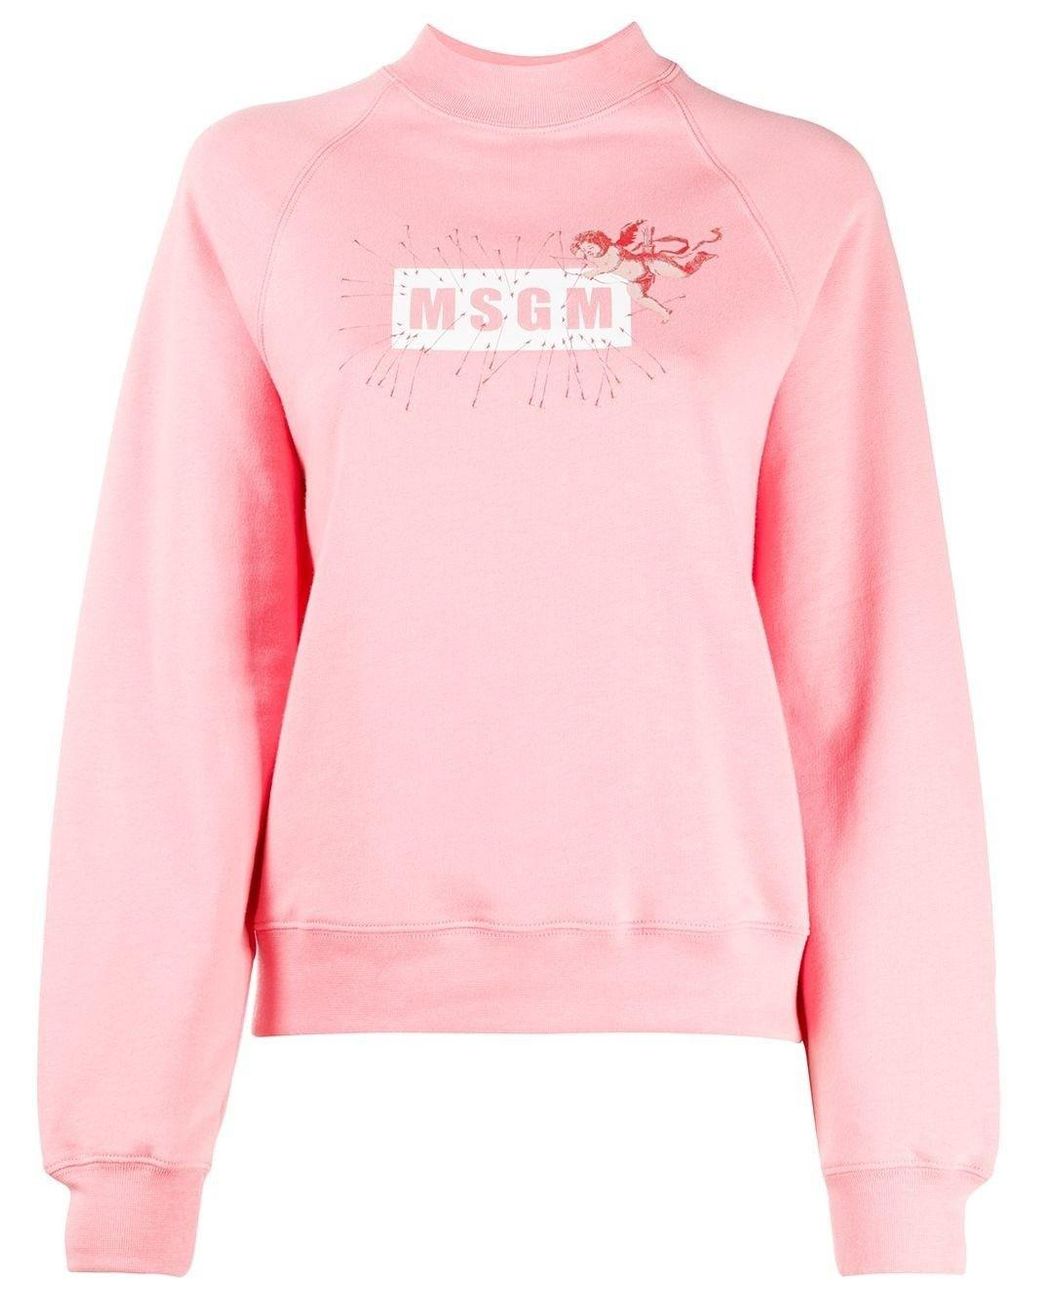 MSGM Cotton Sweatshirt in Pink - Lyst